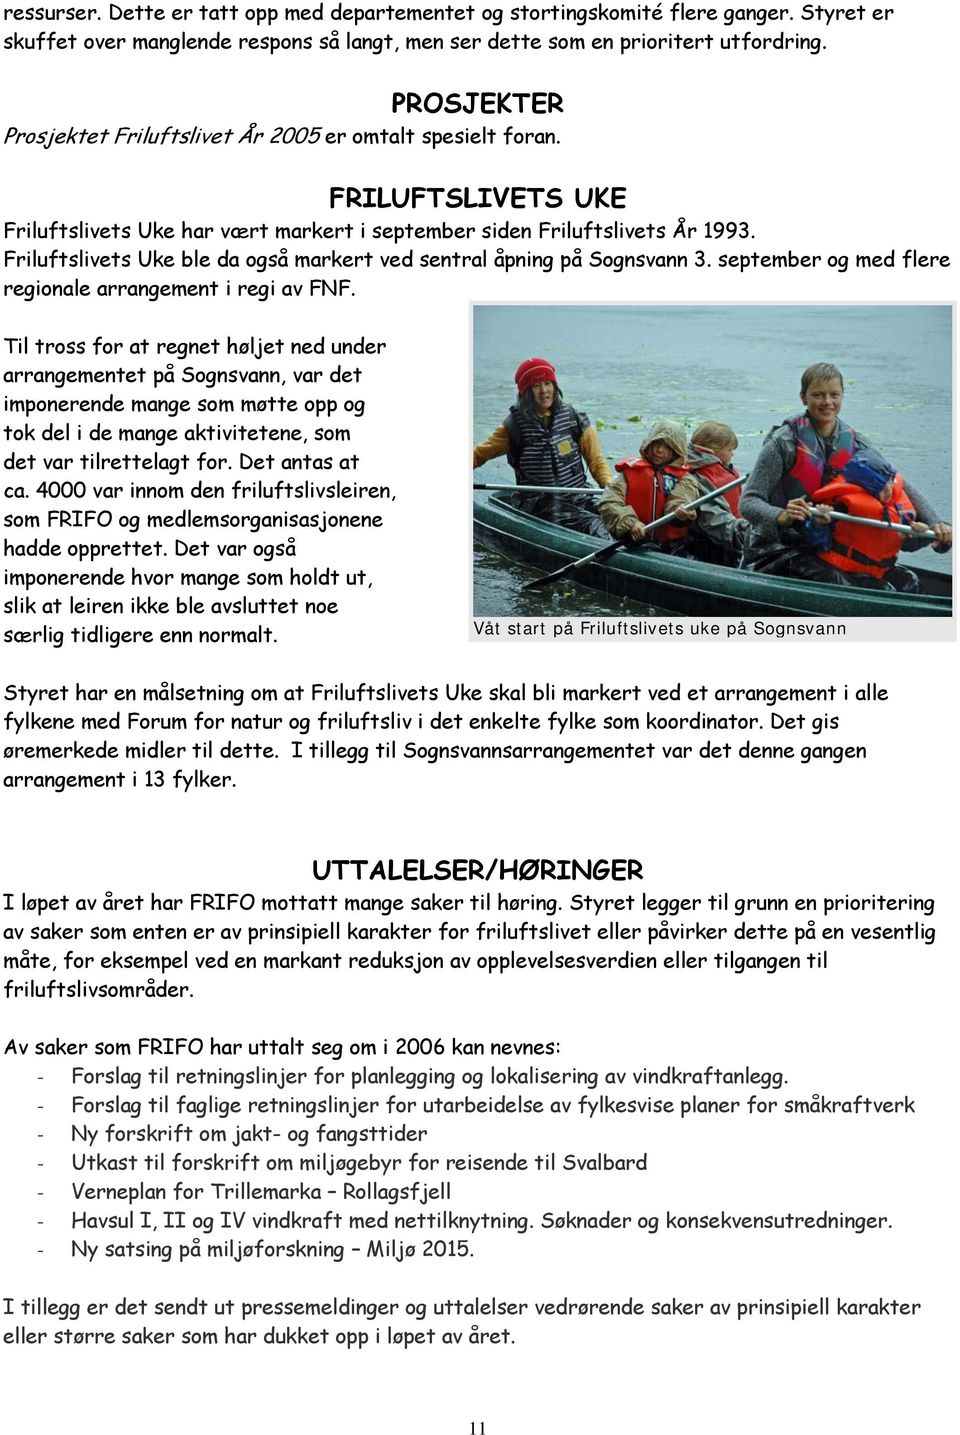 Friluftslivets Uke ble da også markert ved sentral åpning på Sognsvann 3. september og med flere regionale arrangement i regi av FNF.